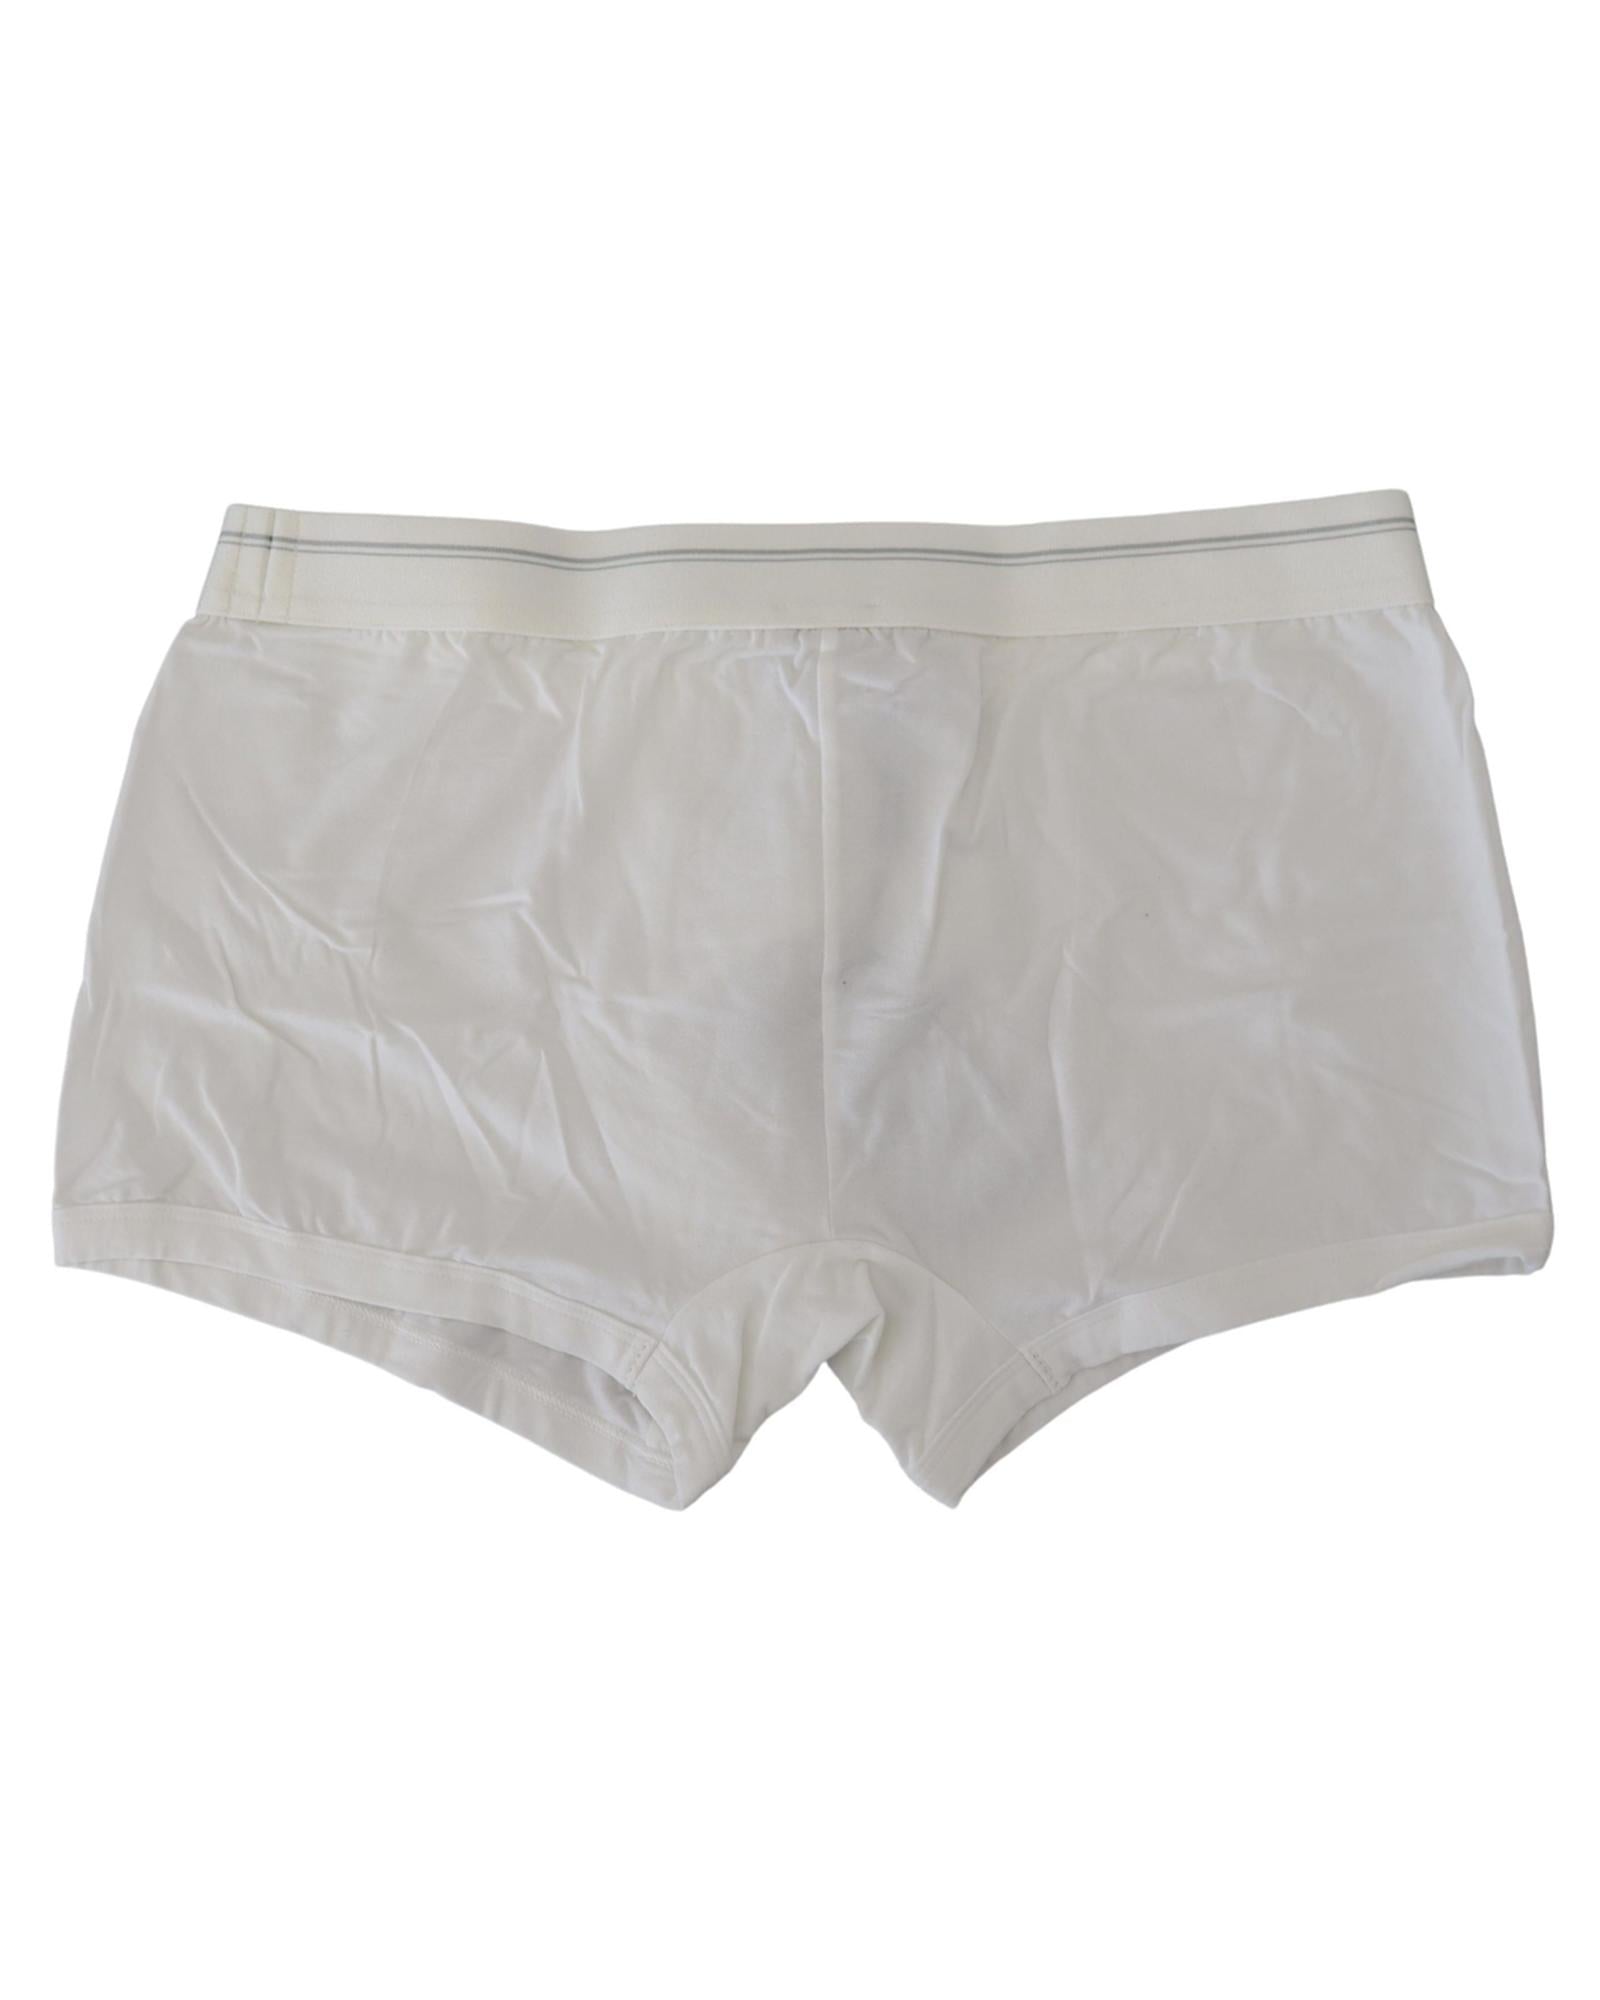 Stylish Dolce & Gabbana Boxer Shorts with Elastic Waistband S Men